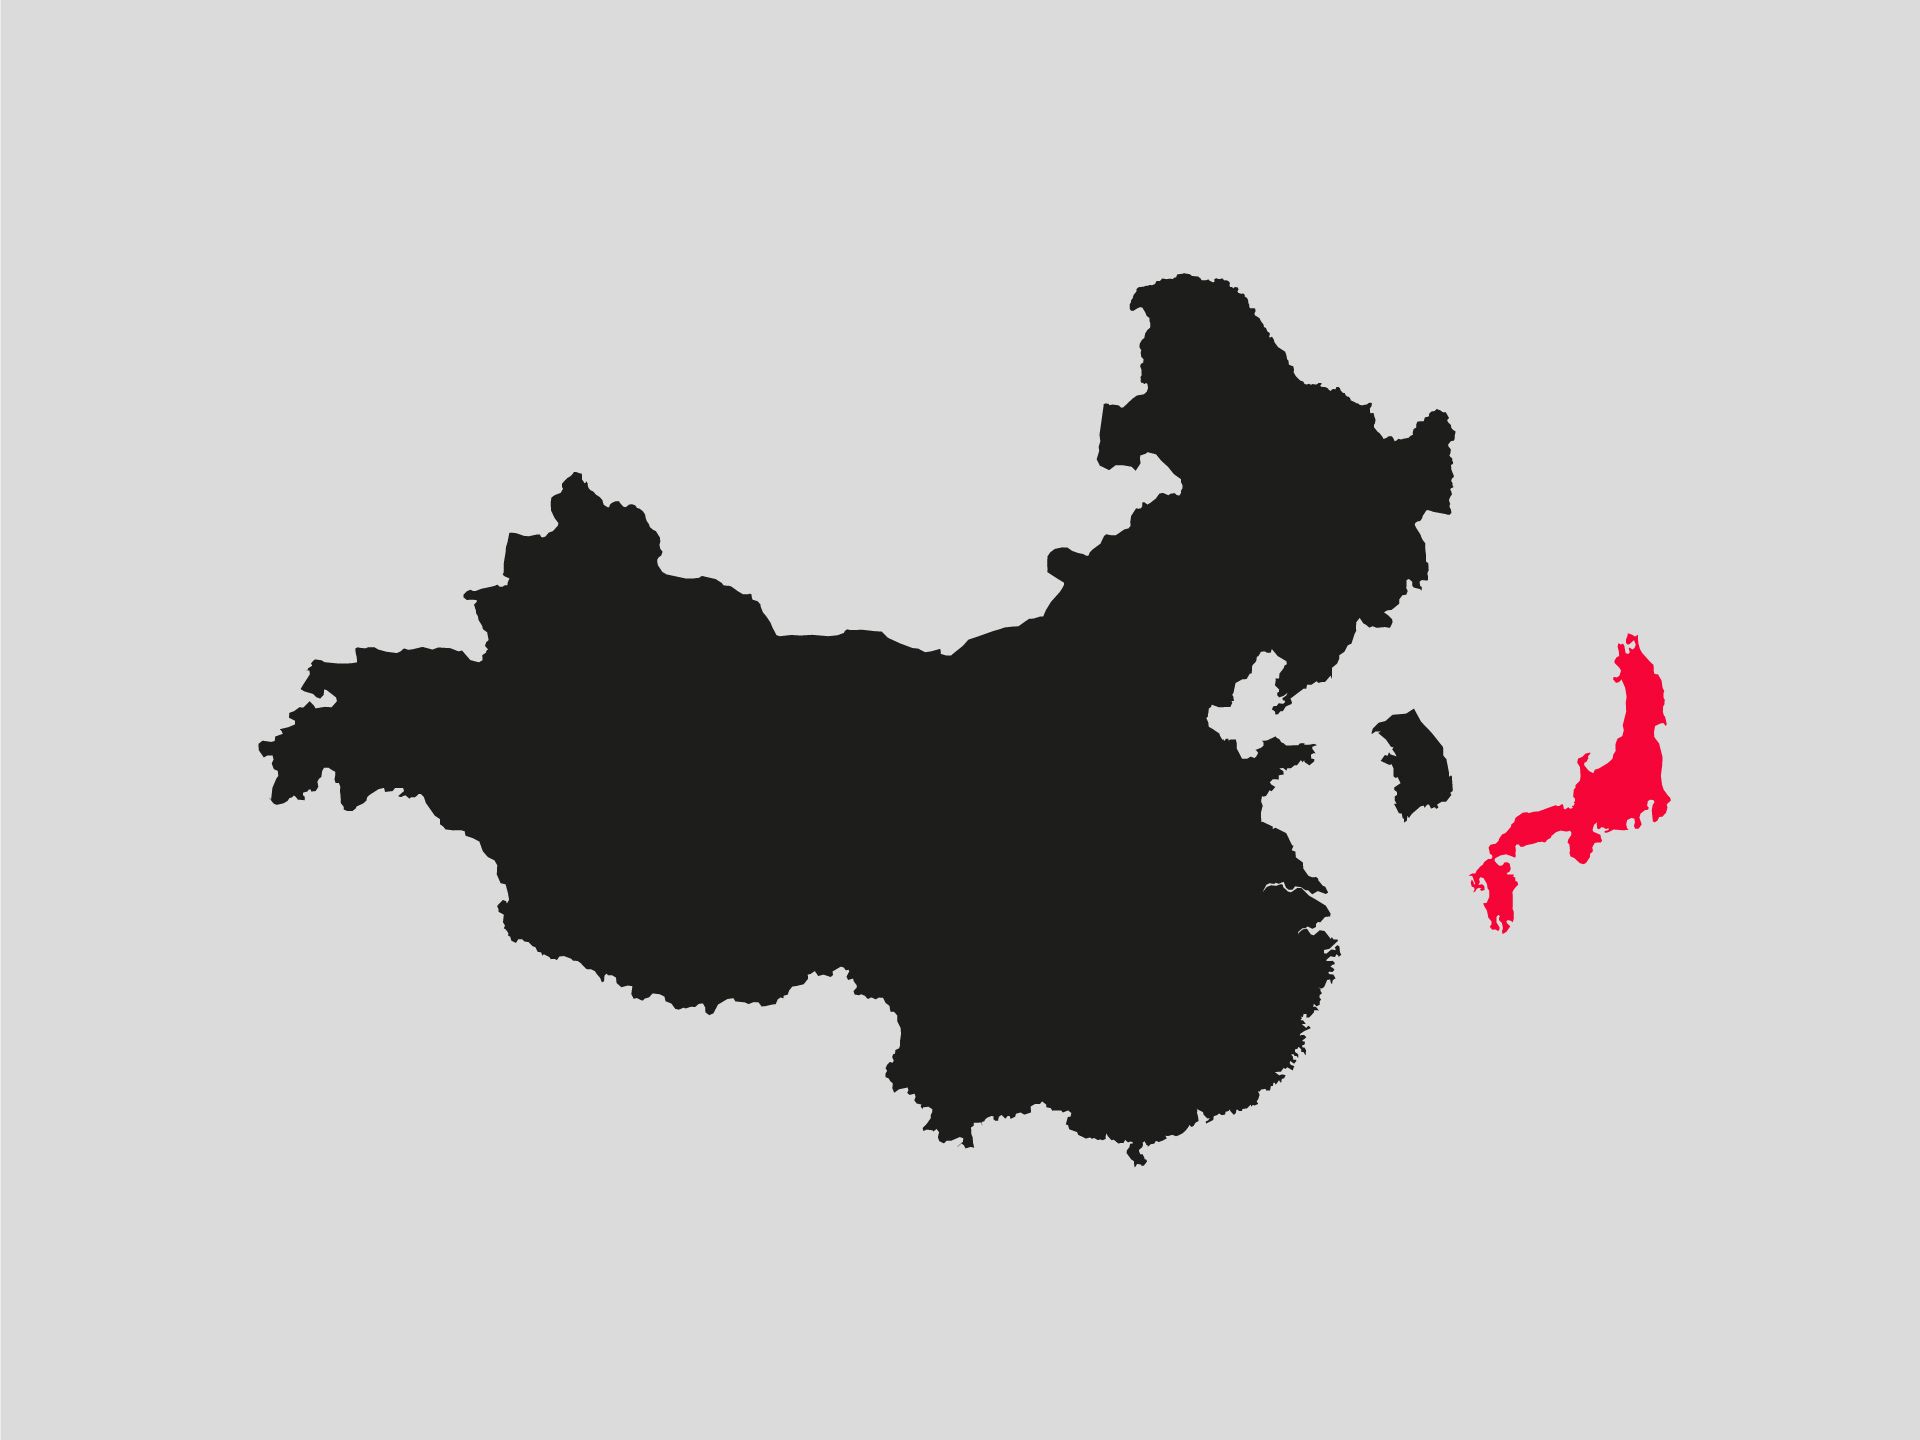 In dieser Illustration sind China, Südkorea und Japan zu sehen. Japan ist farblich hervorgehoben.